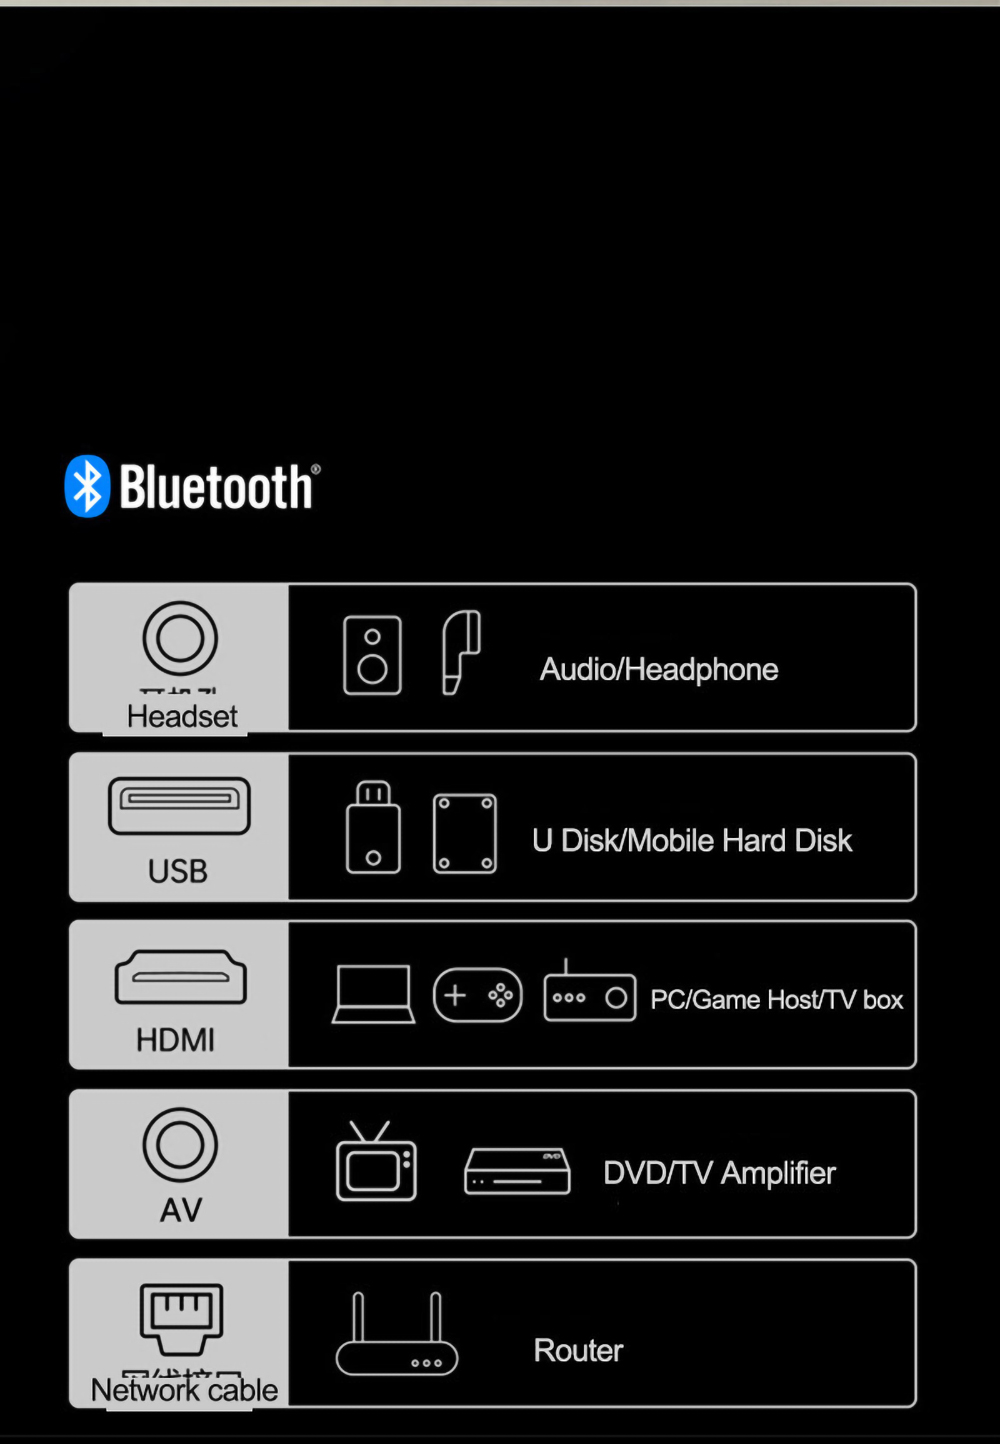 Versão global Lenovo L5 Smart LED WIFI Projetor Sistema de TV Android 450 ANSI Lumens 1080P Resolução nativa